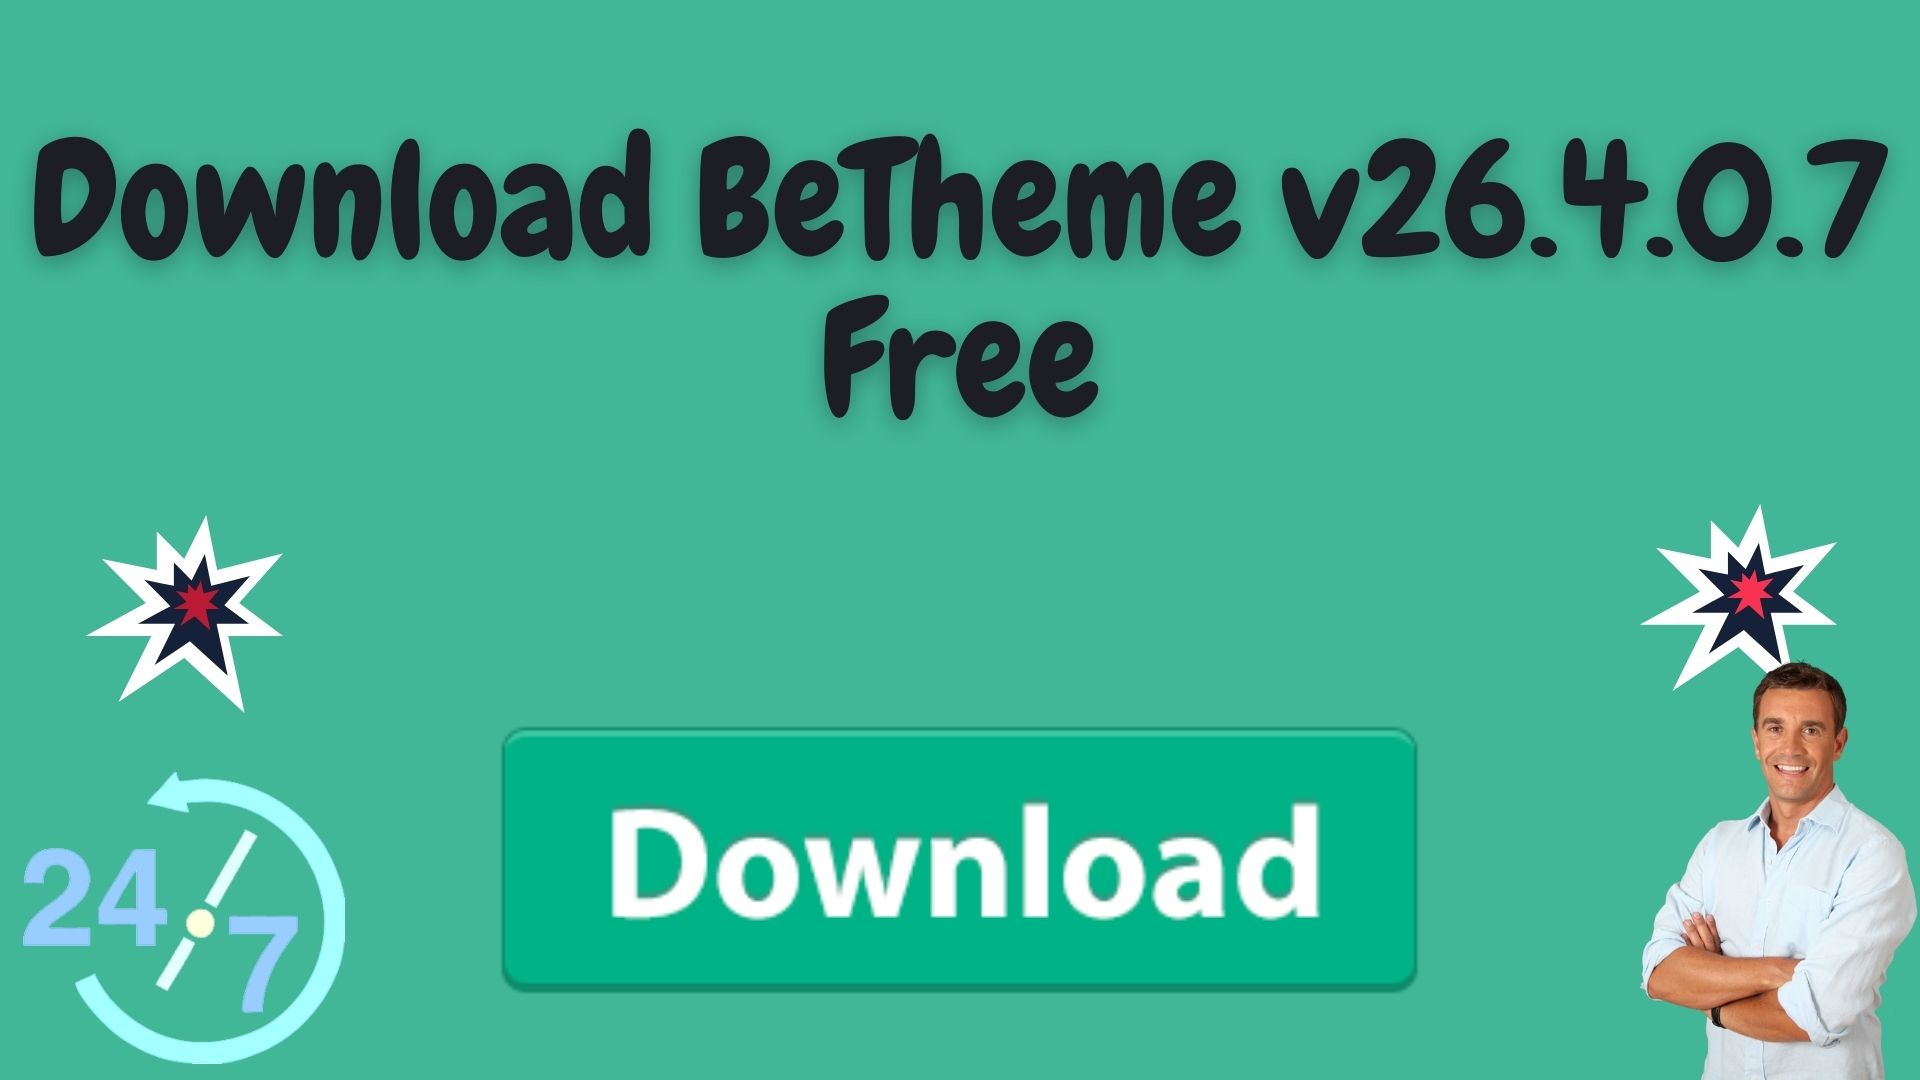 Download betheme v26. 4. 0. 7 free